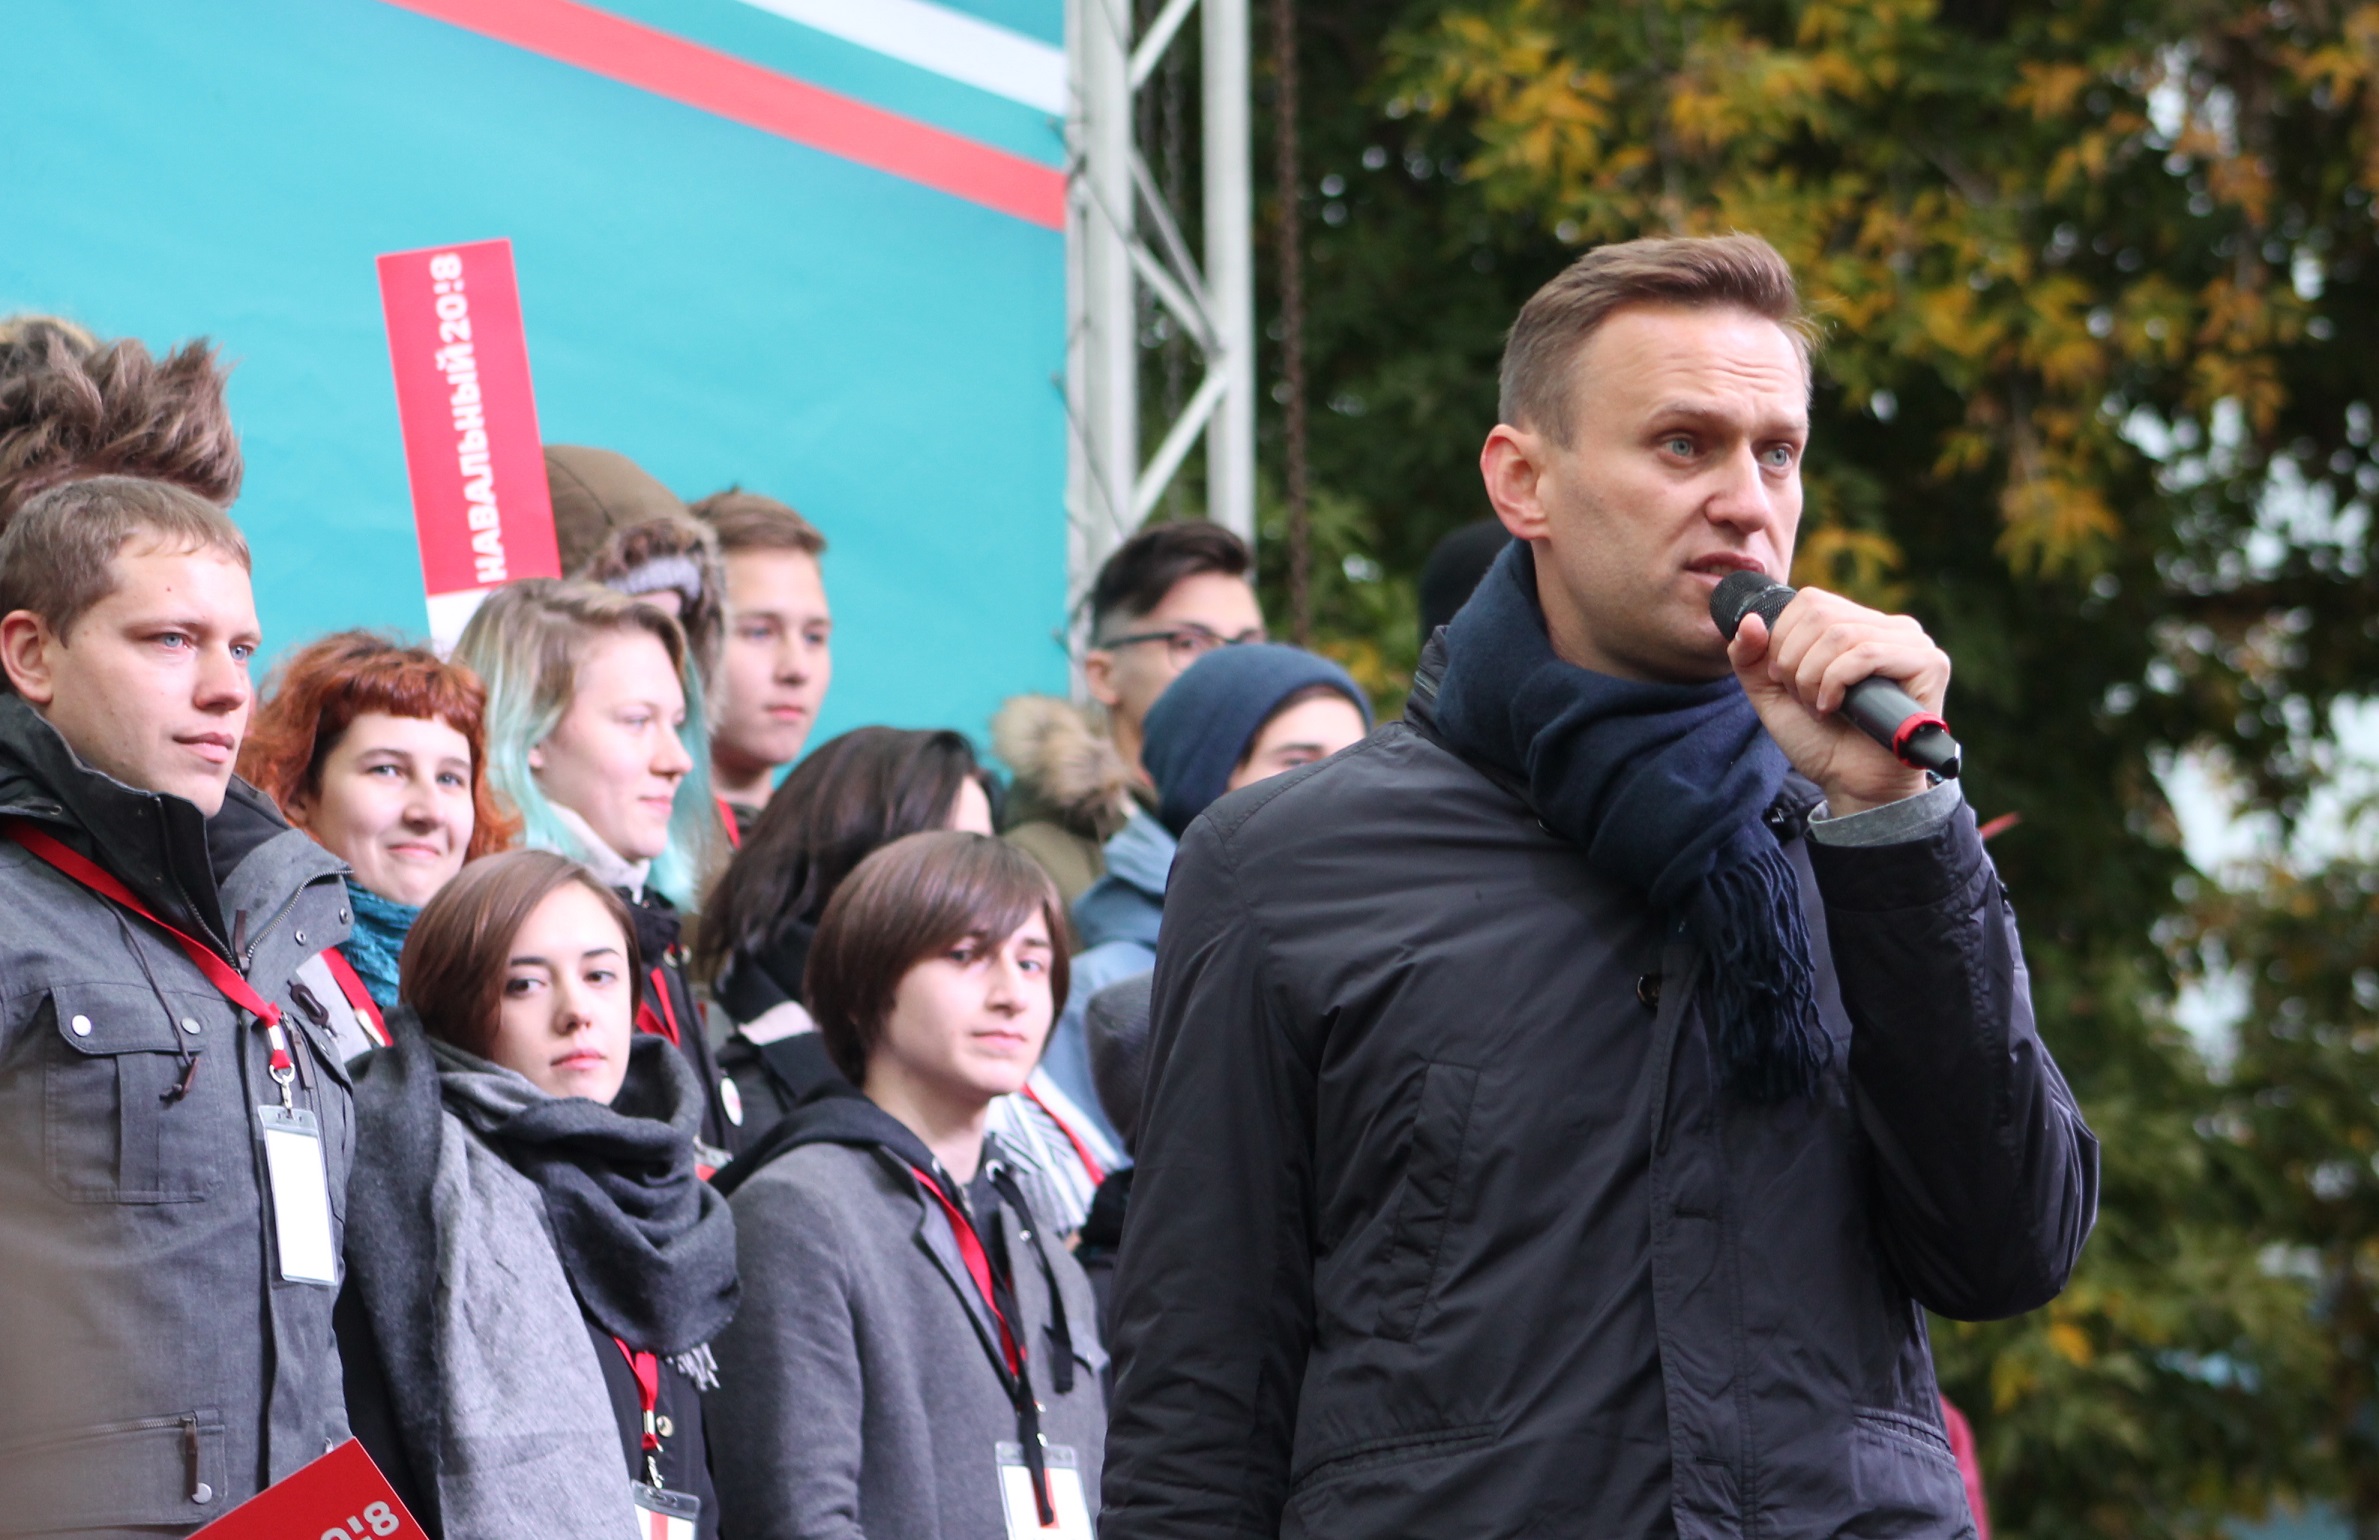 В своем выступлении Навальный поднял типичные для него темы коррупции в России, несменяемости и лицемерия власти.